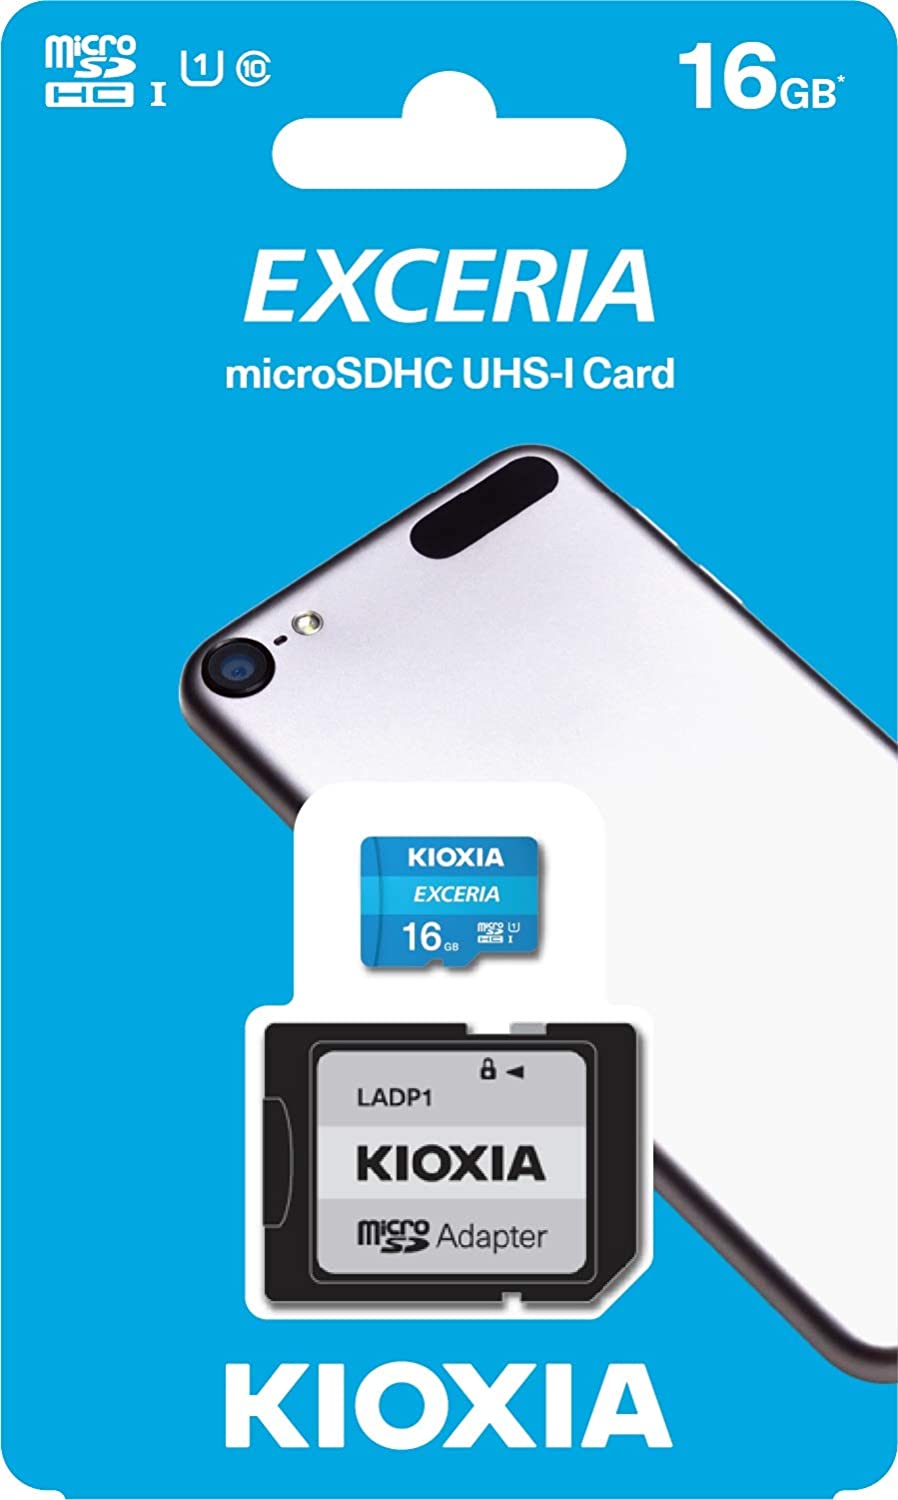 SDC4/16GB/CLASS10  TARJETA MICRO SD 16 GB KIOXIA CLASS 10